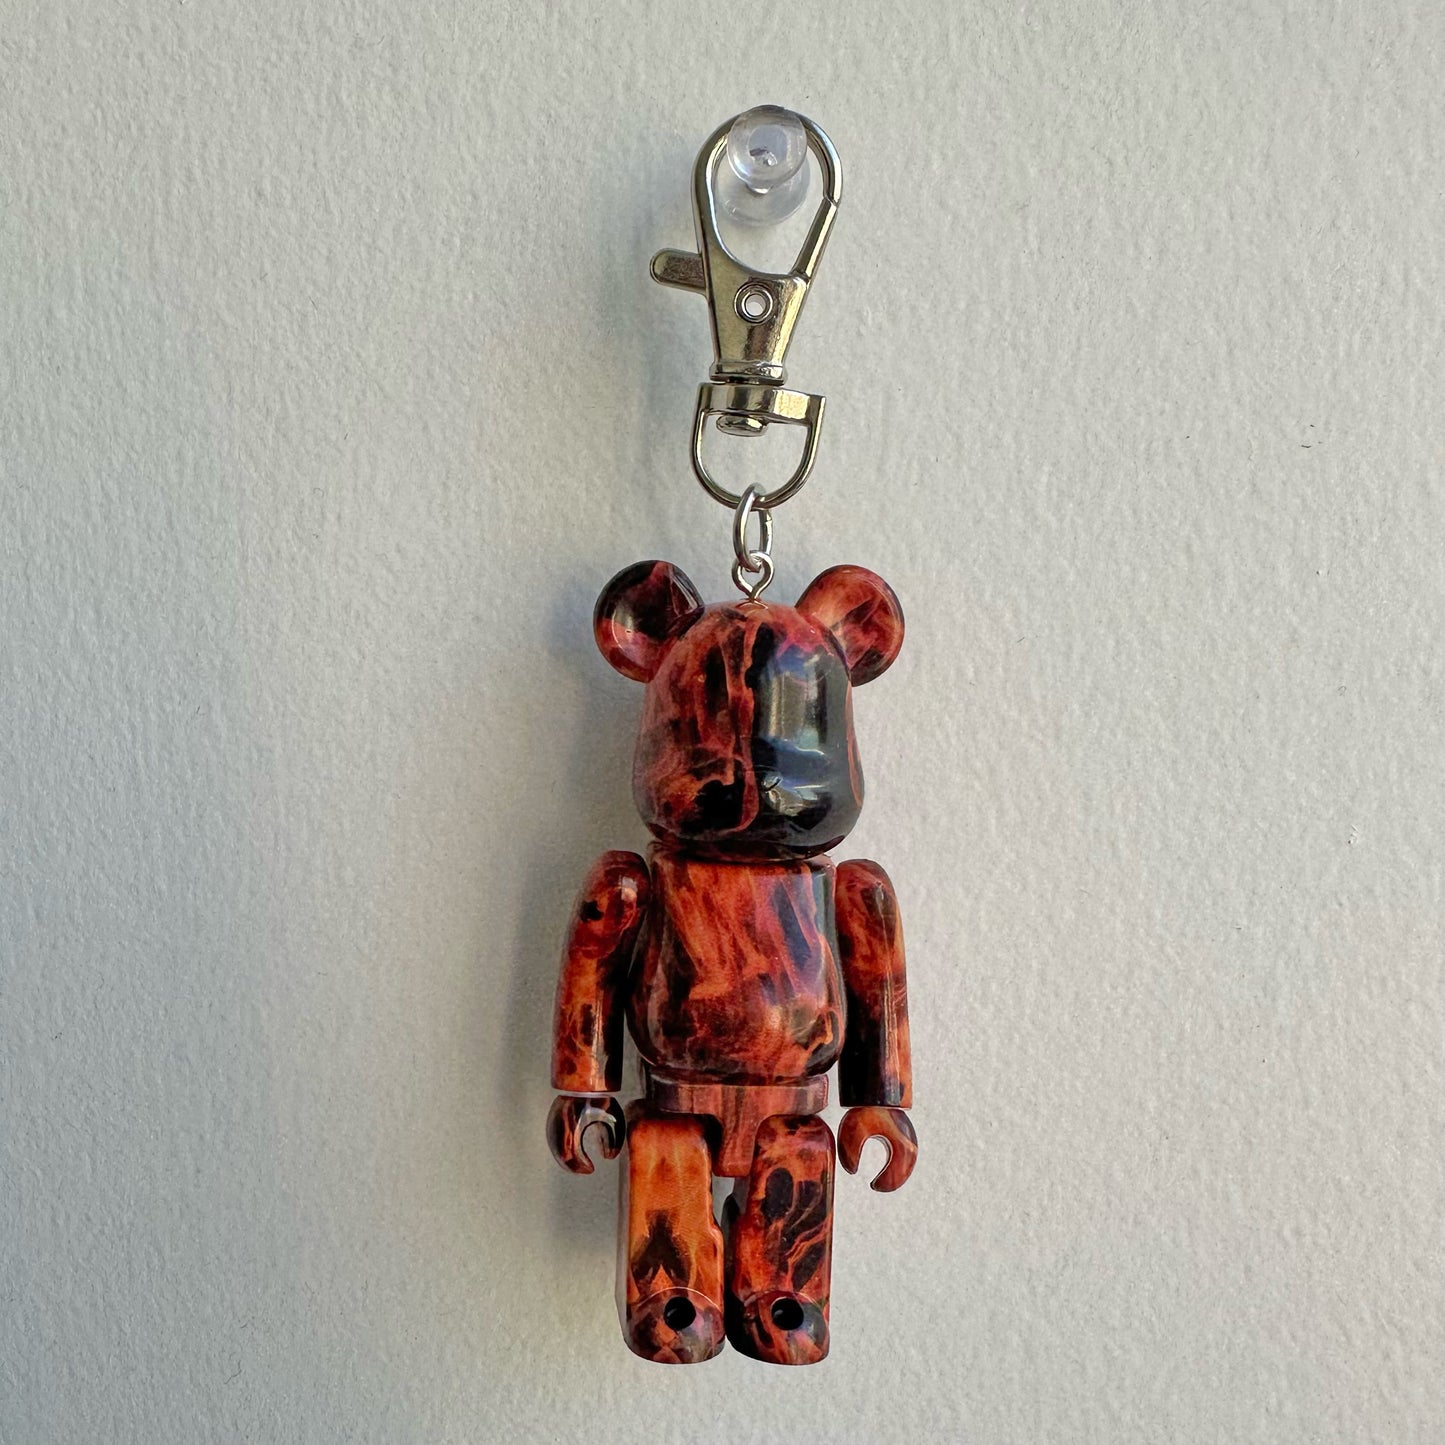 39 upcycled bearbrick keychains – shopseomthing